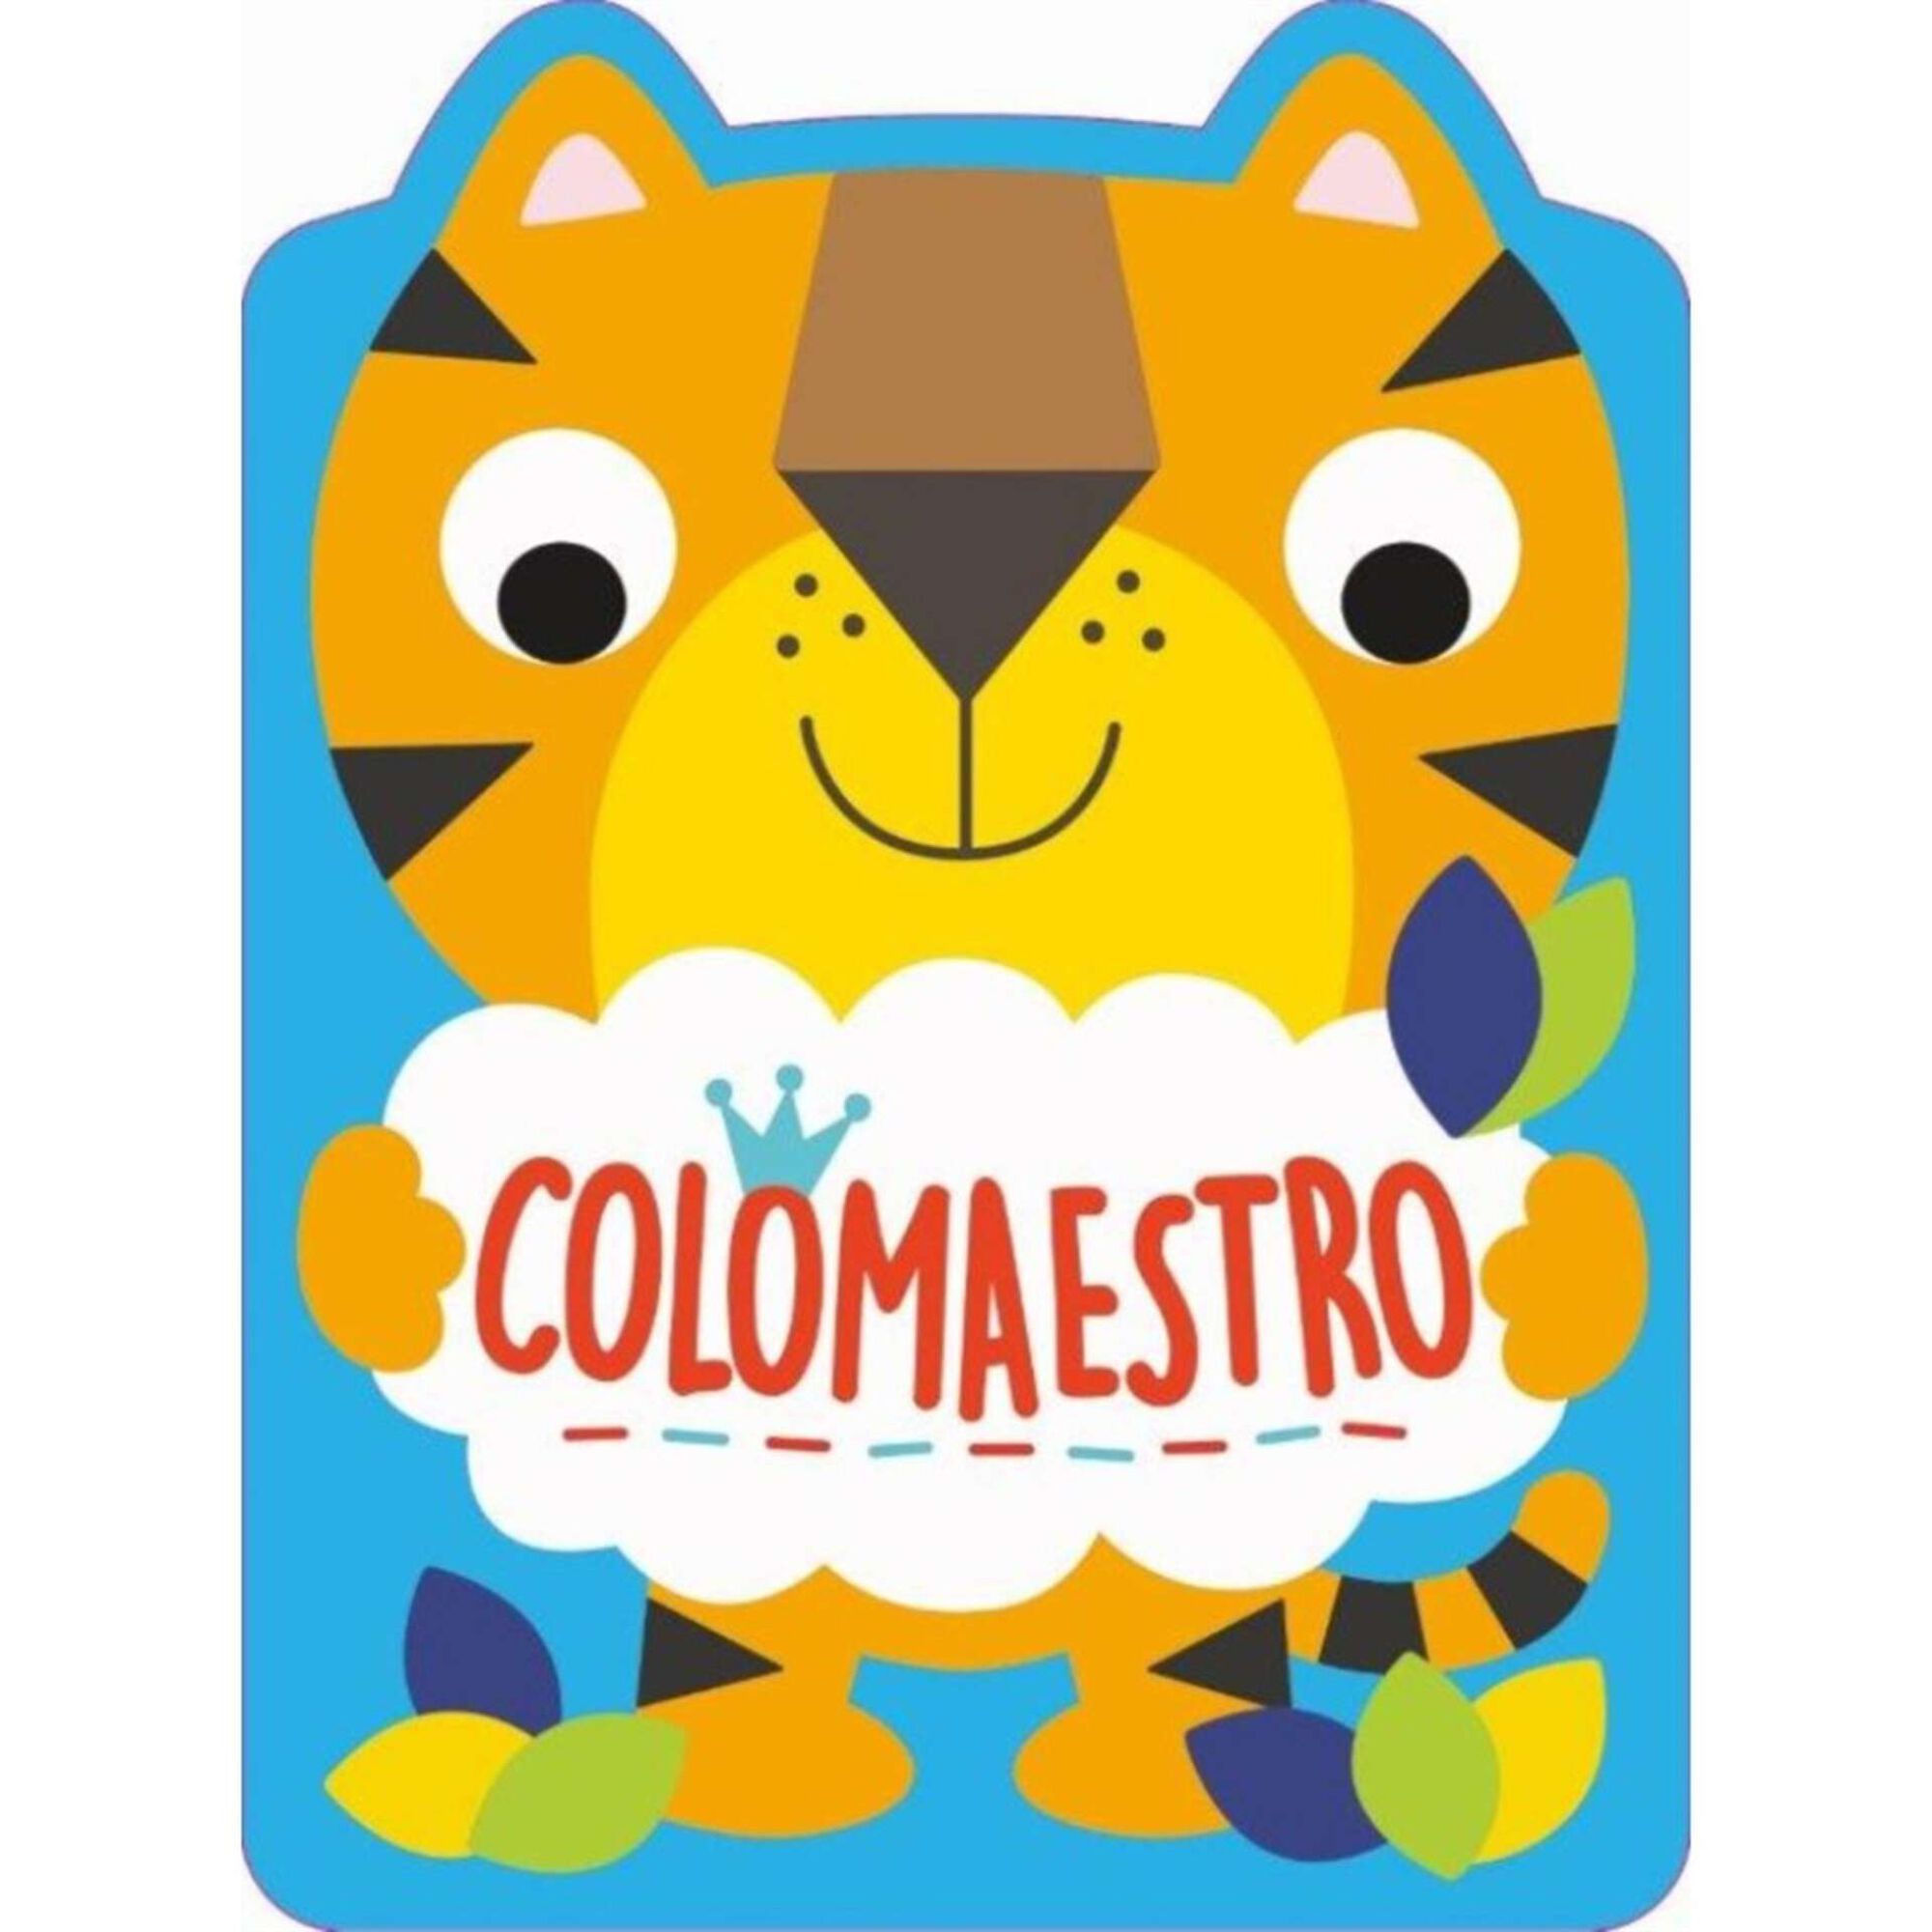 Colomaestro - Tigre